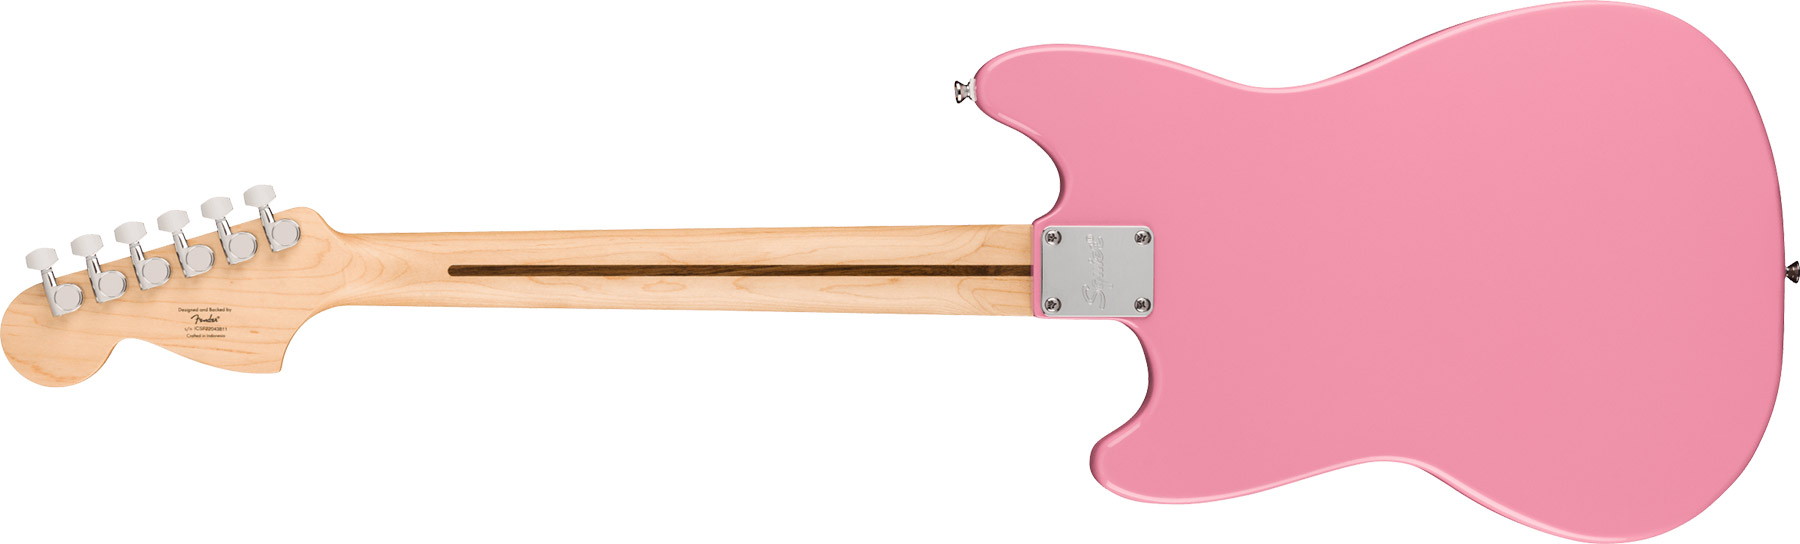 Squier Mustang Sonic Hh 2h Ht Mn - Flash Pink - Retro-rock elektrische gitaar - Variation 1